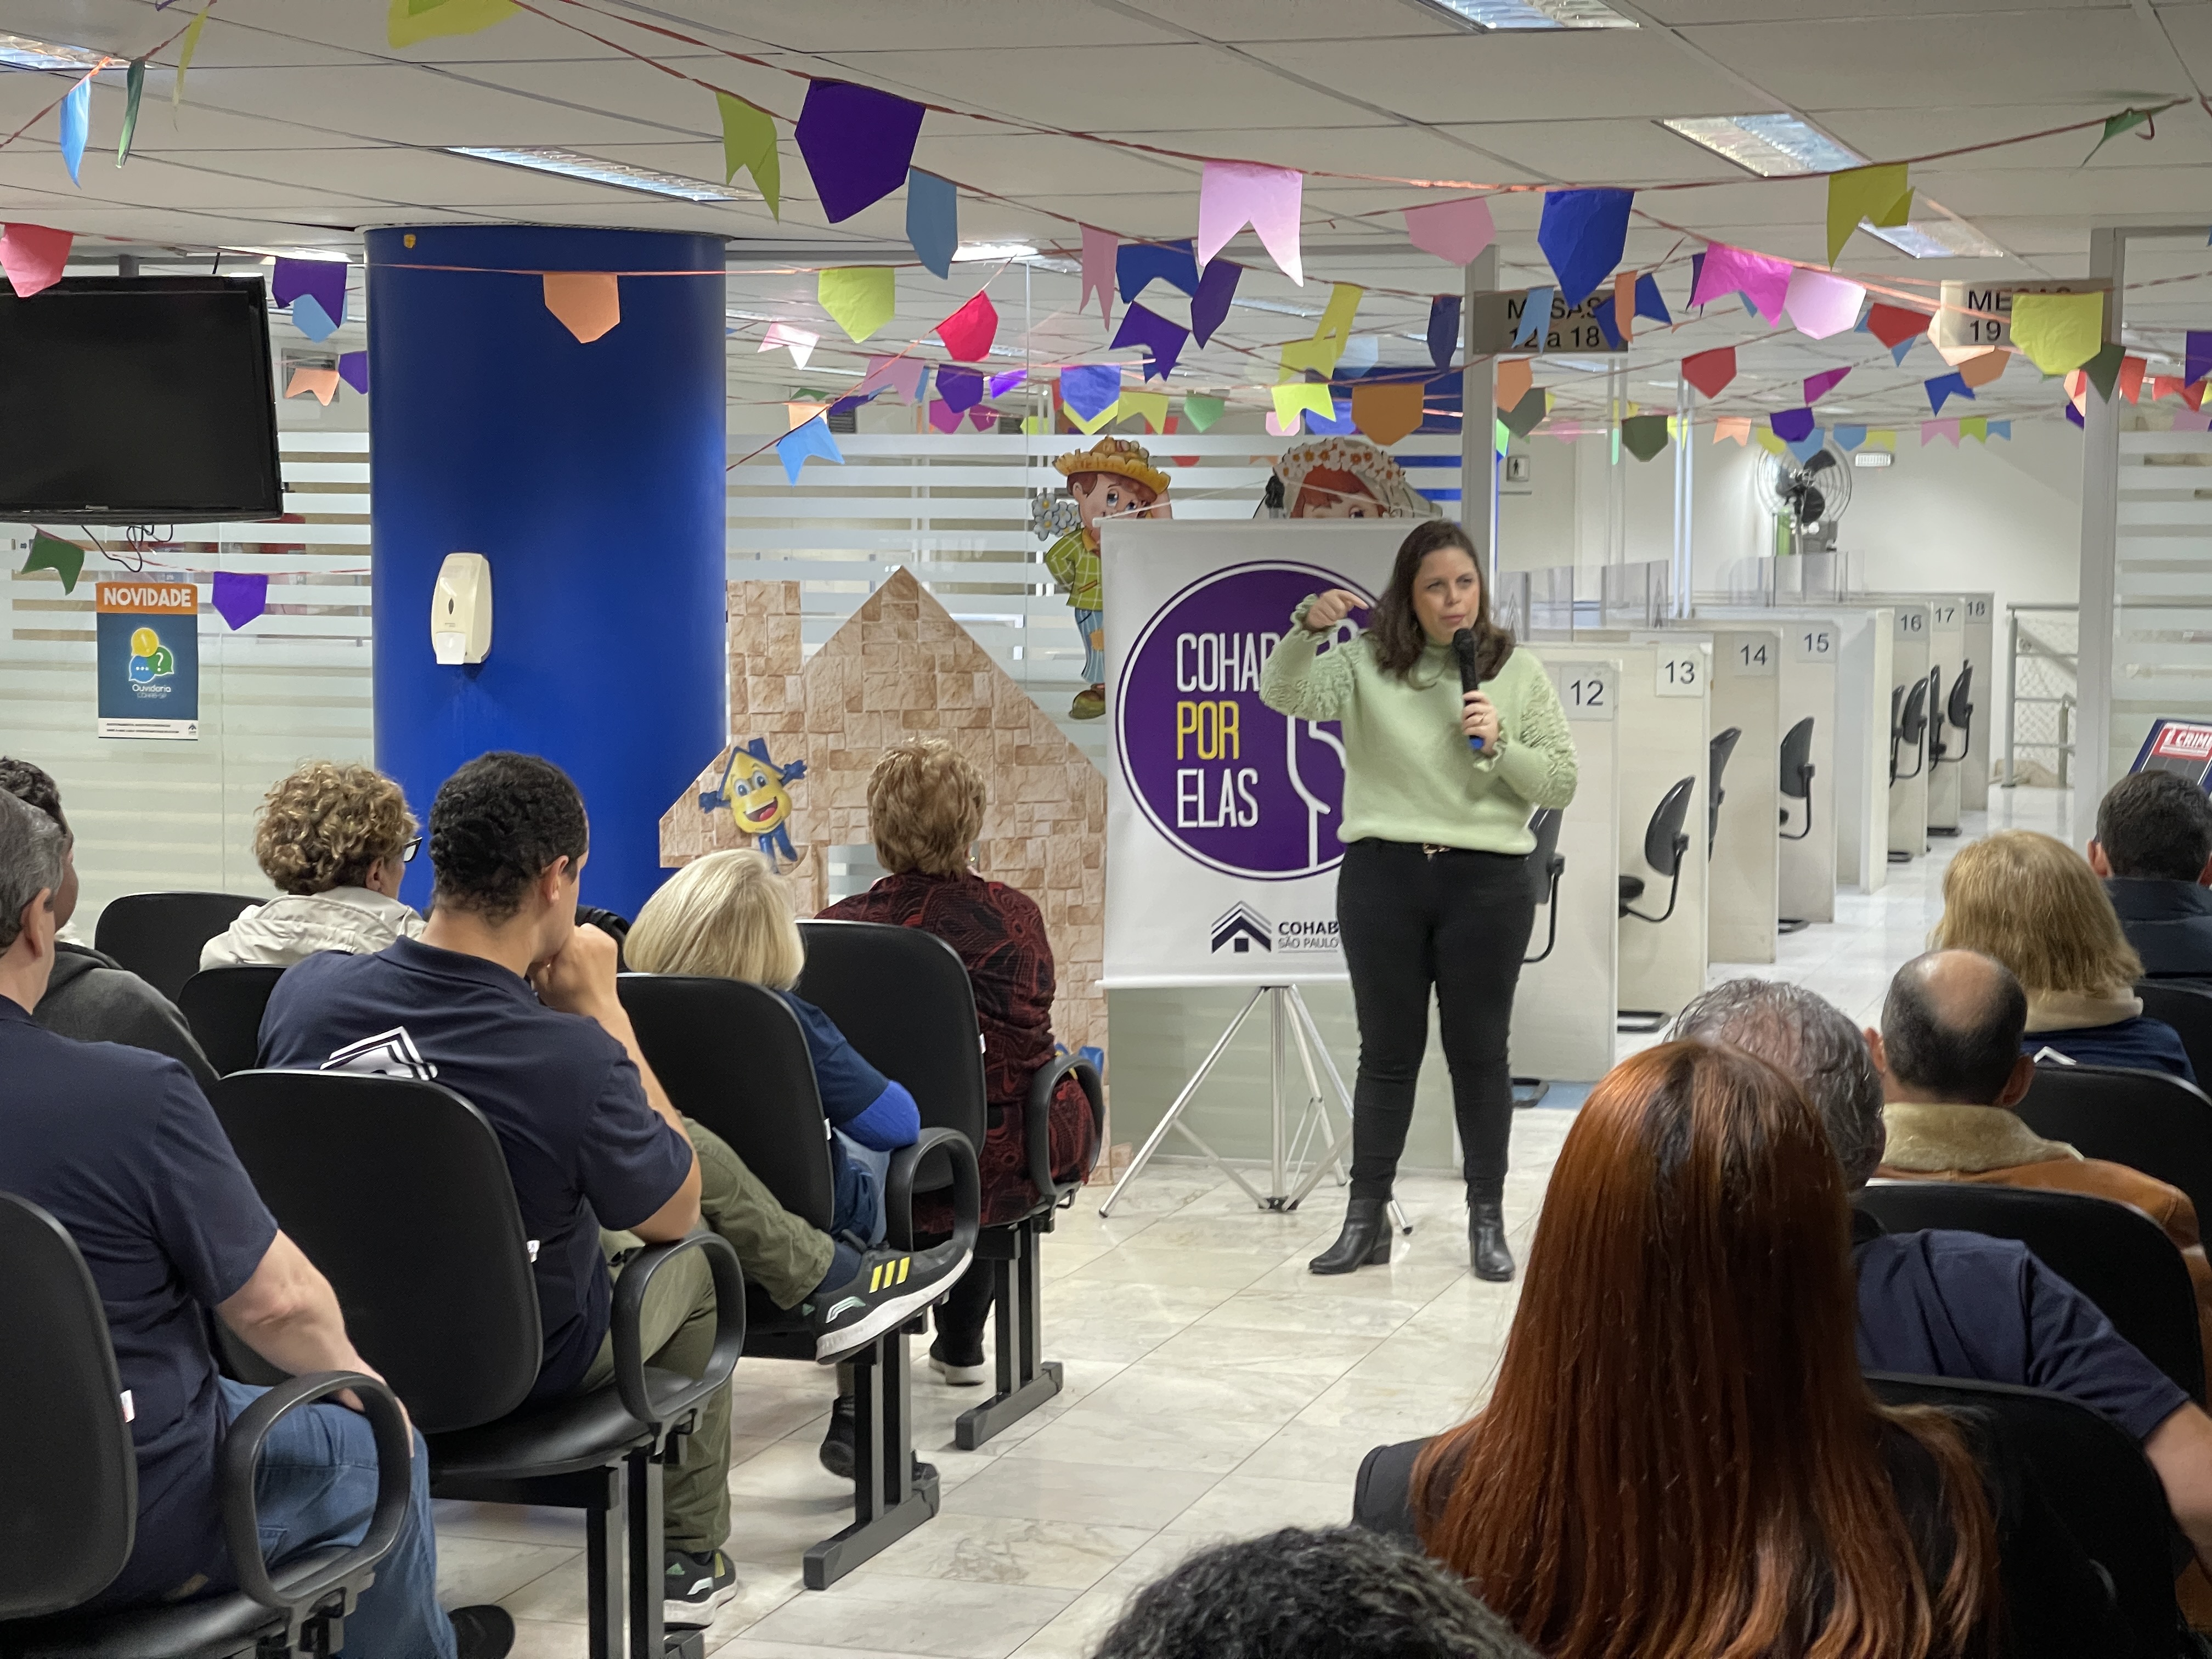 A psicóloga Ana Carolina Sampaio Fernandes com o Programa Cohab Por Elas dando treinamento com seus colaboradores para capacitá-los a orientar mulheres que possam estar sofrendo algum tipo de violência. 